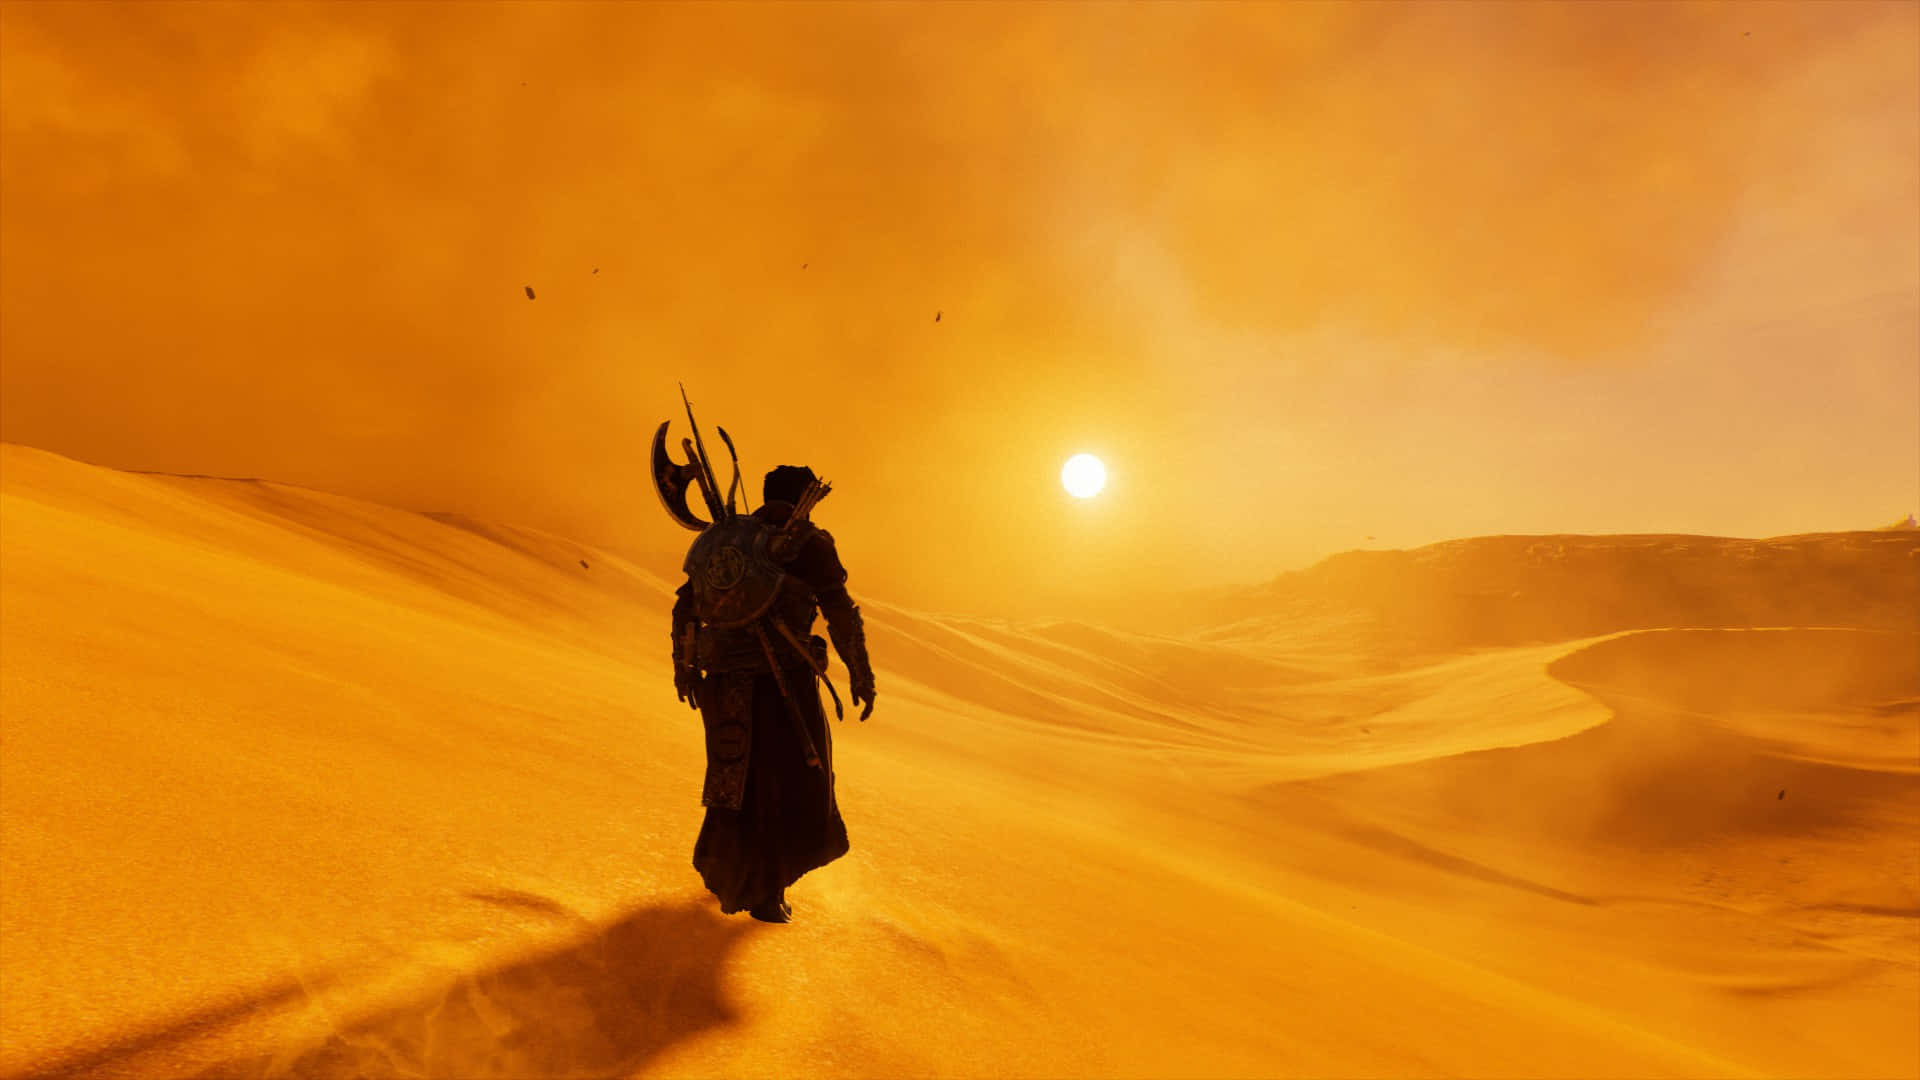 Egypt Desert 1920x1080 Assassin's Creed Origins Background